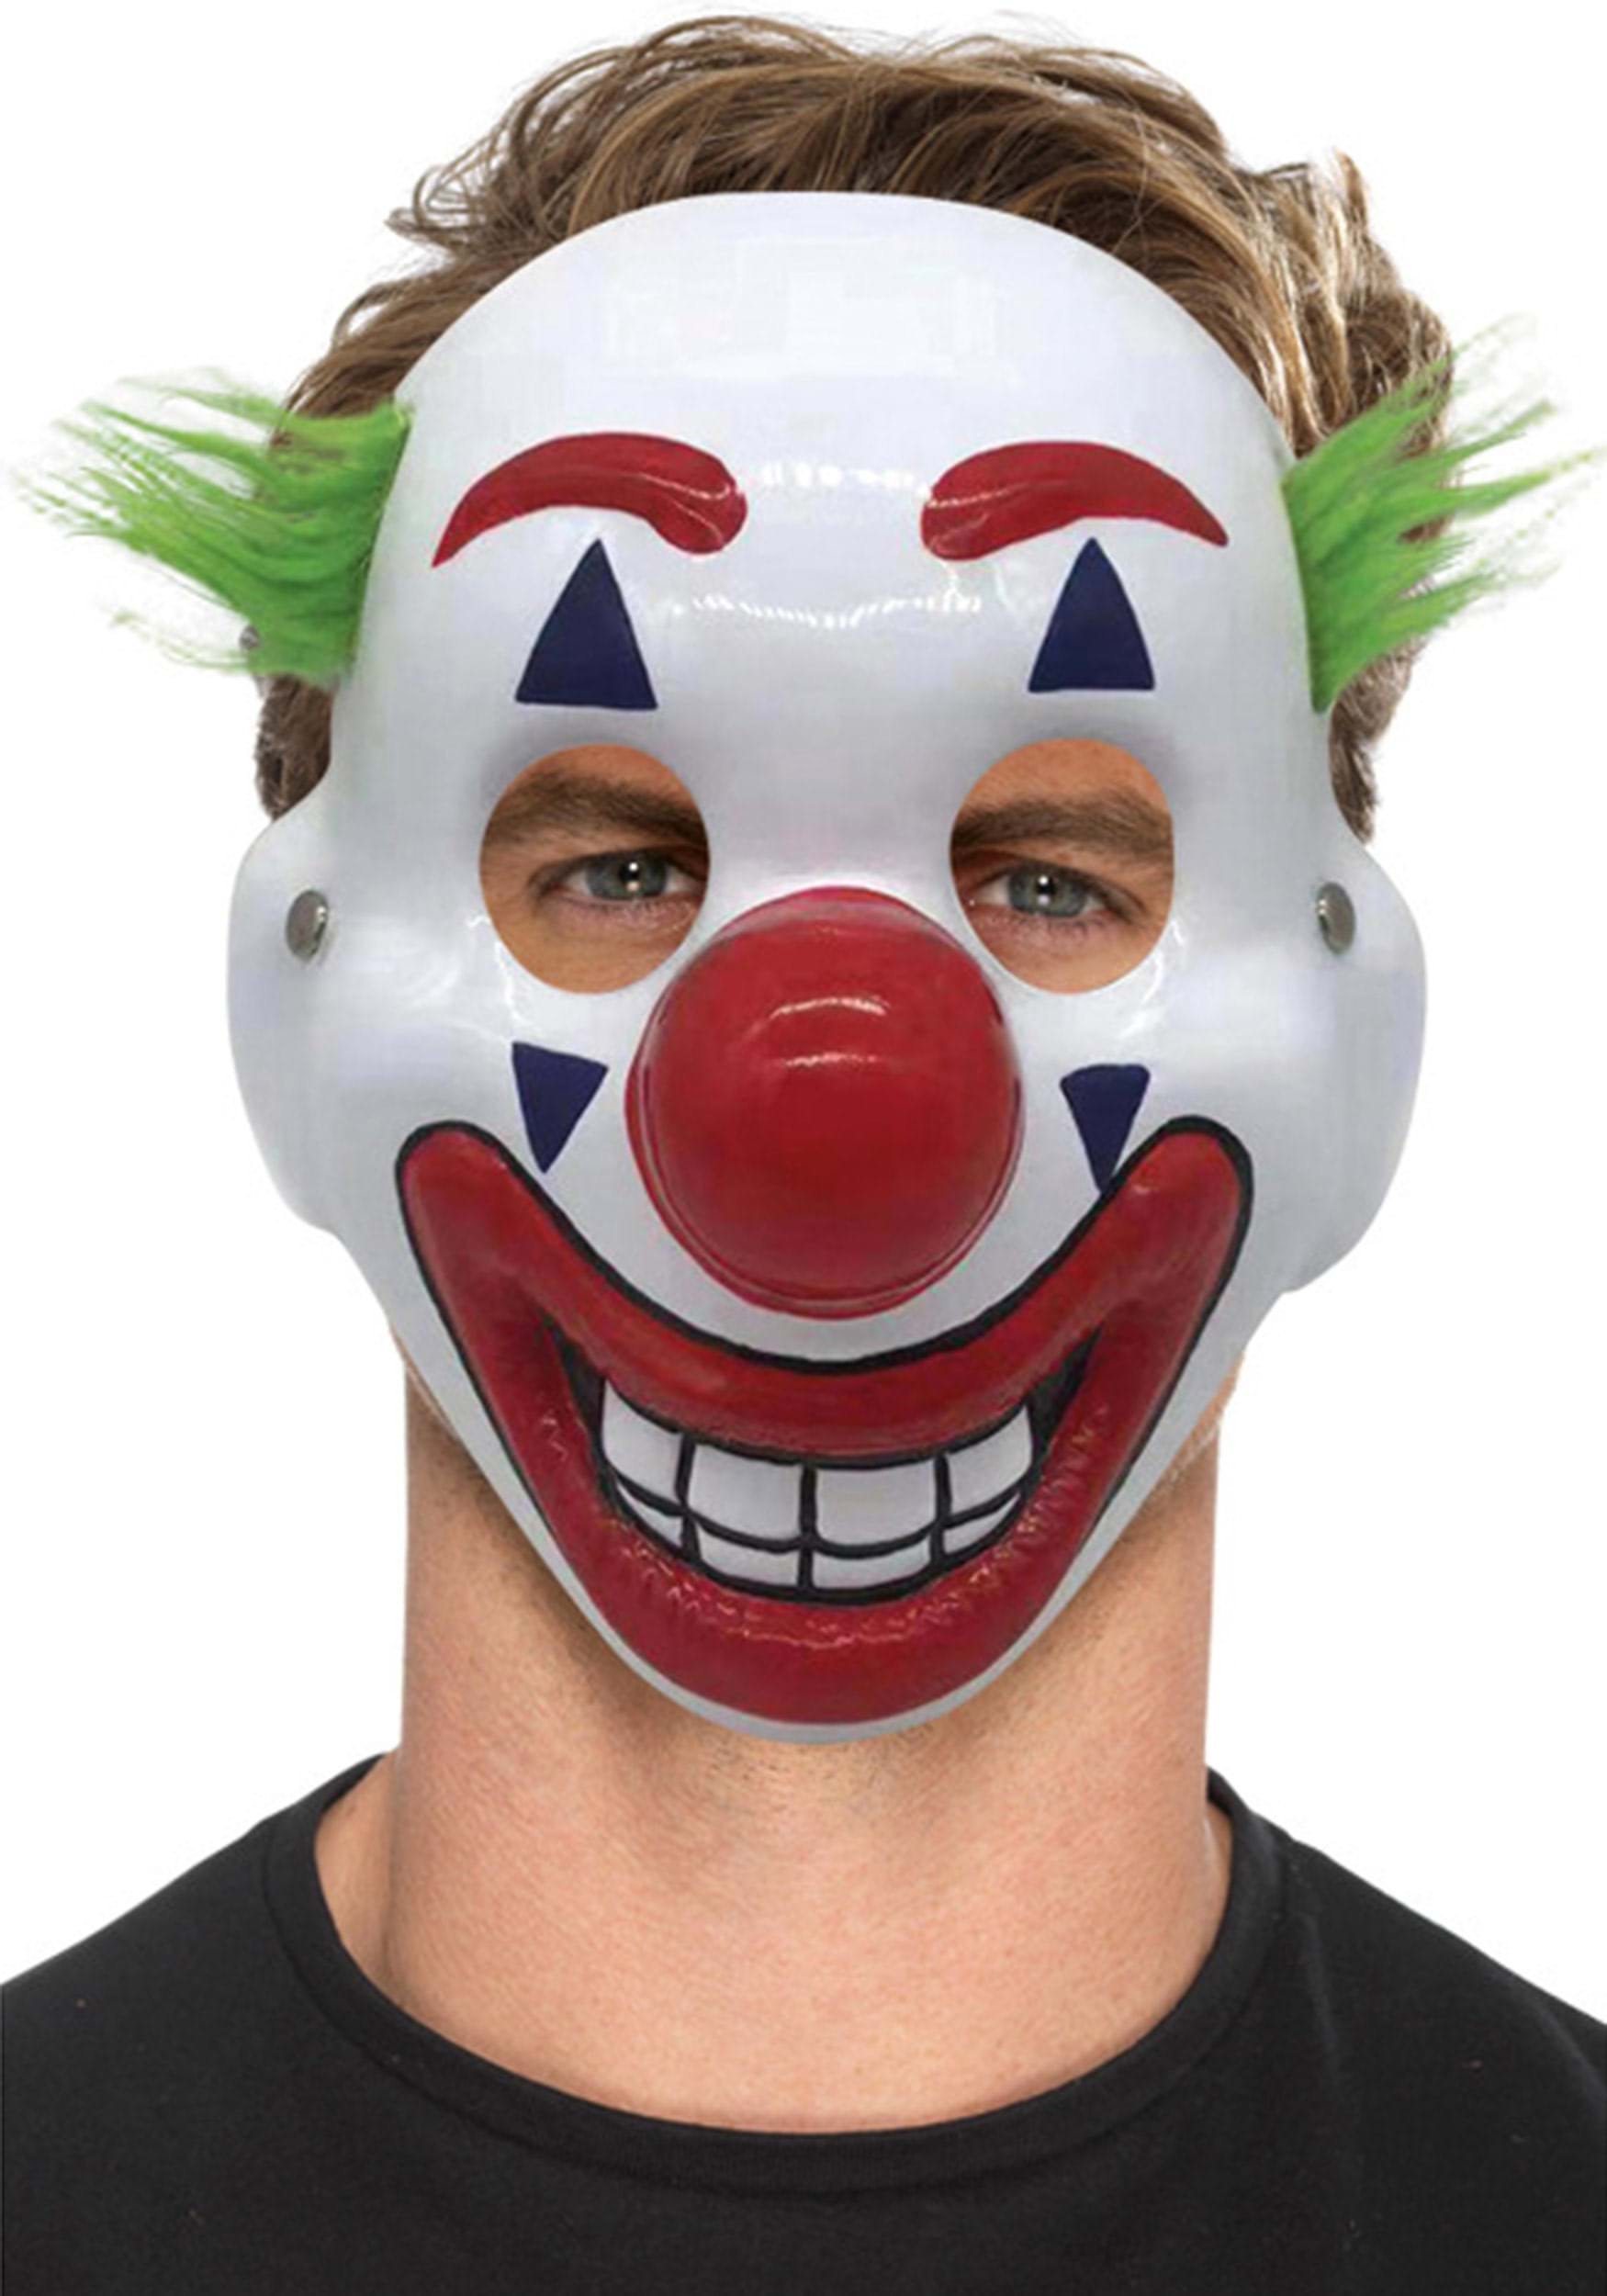 Overwegen Voorwaardelijk Bloeien Adult Clown Mask with Hair